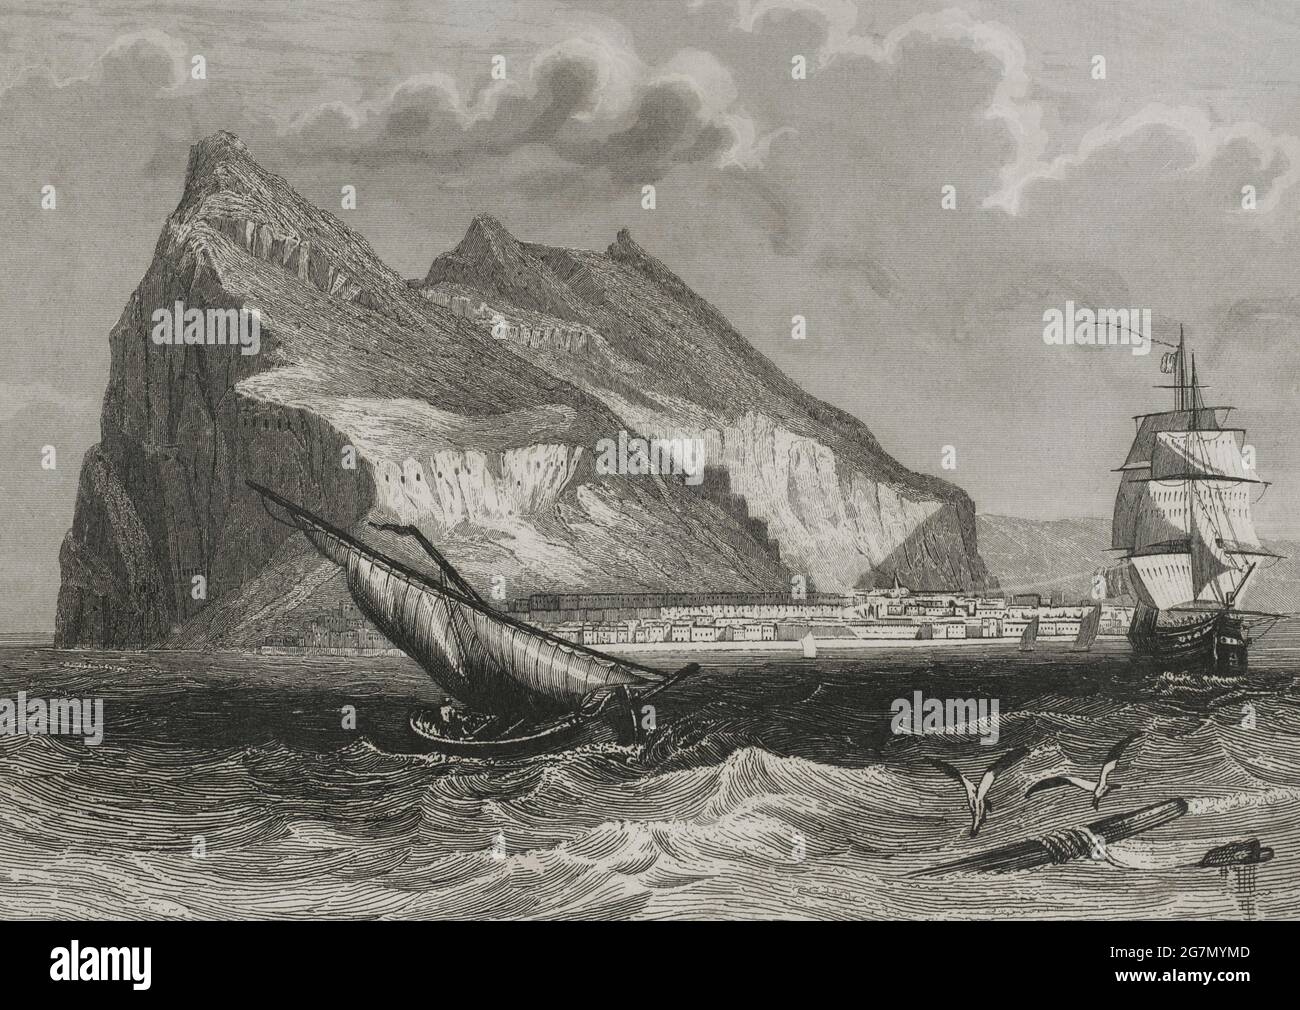 Gibilterra. Vista generale. Incisione di Antonio Roca Sallent. Las Glorias Nacionales, 1853. Autore: Antonio Roca Sallent (1813-1864). Incisore spagnolo. Foto Stock